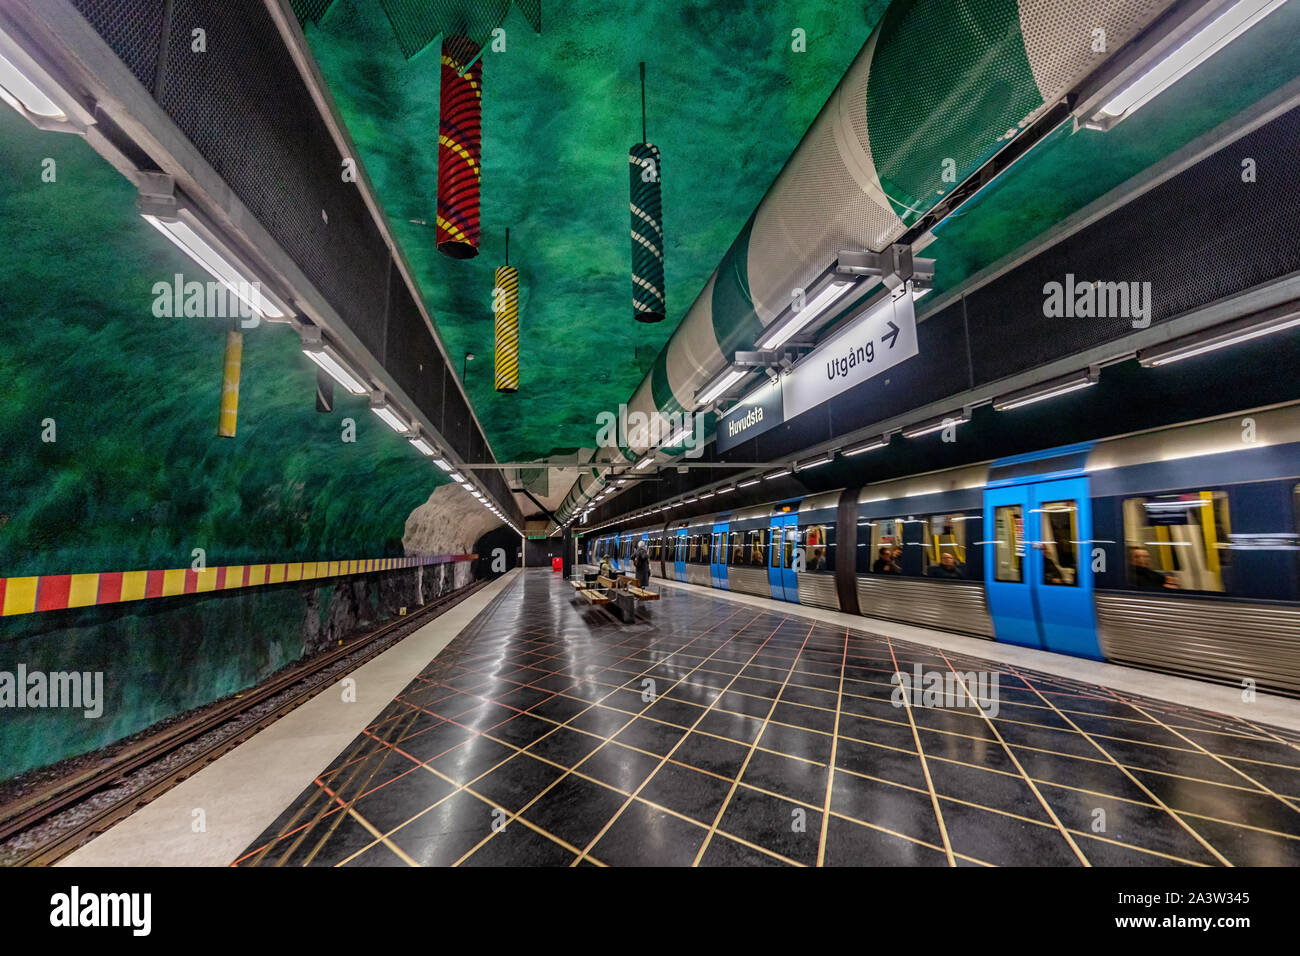 Huvudstra est la station de métro sur la ligne bleue du métro de Stockholm (Tunnelbana) , situé à Huvudsta, Municipalité de Solna, Suède, Stockholm central Banque D'Images